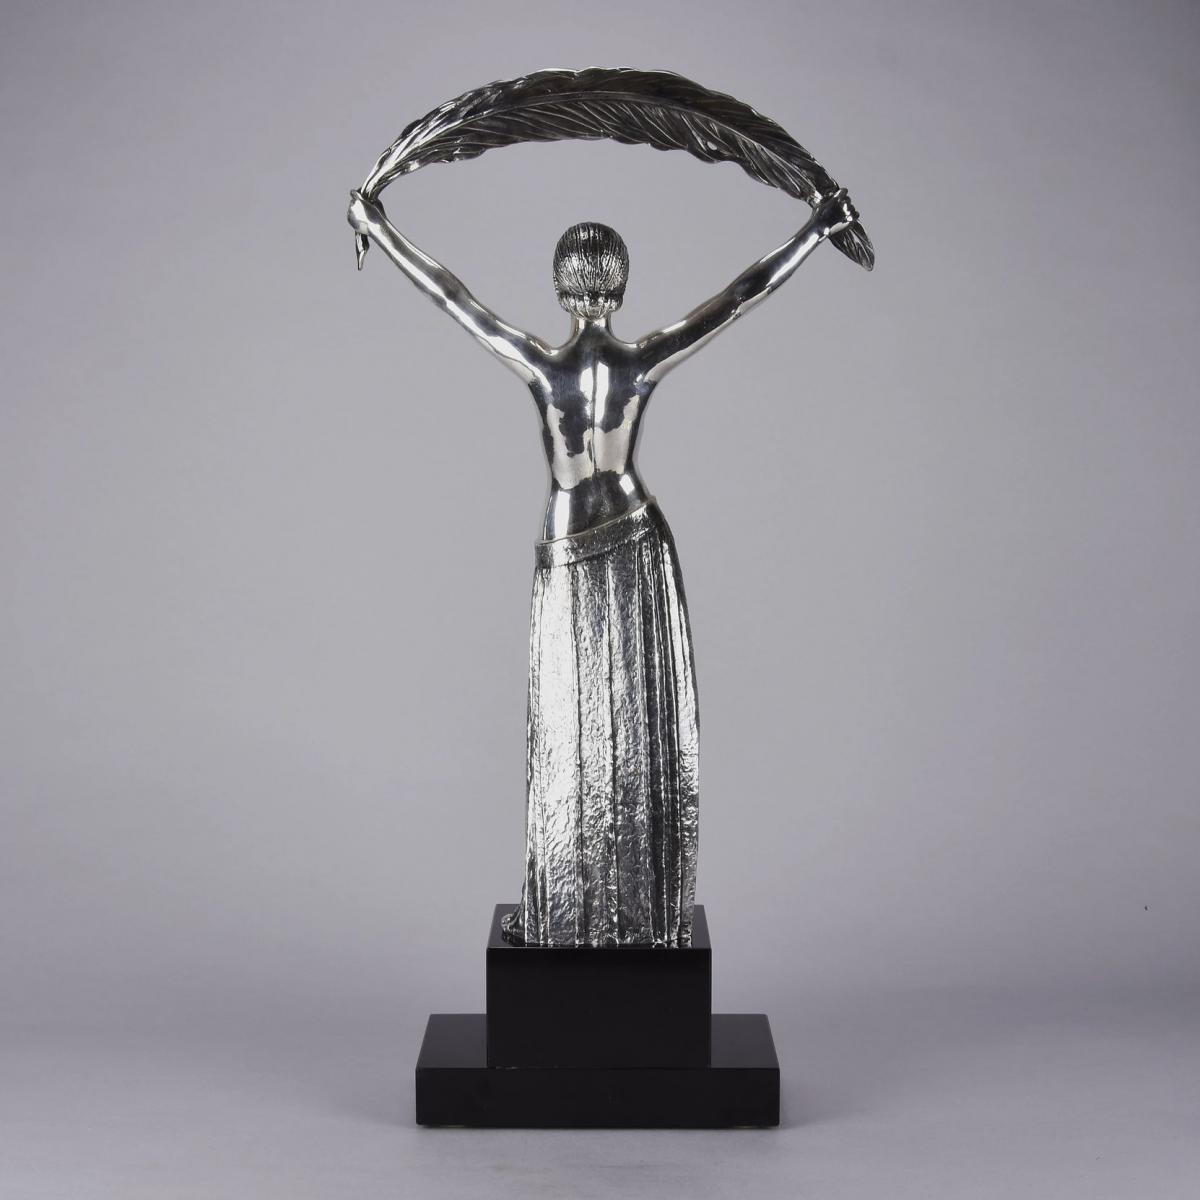 Art Deco Silvered Bronze Figure  "Femme a la Palme" by Demetre Chiparus